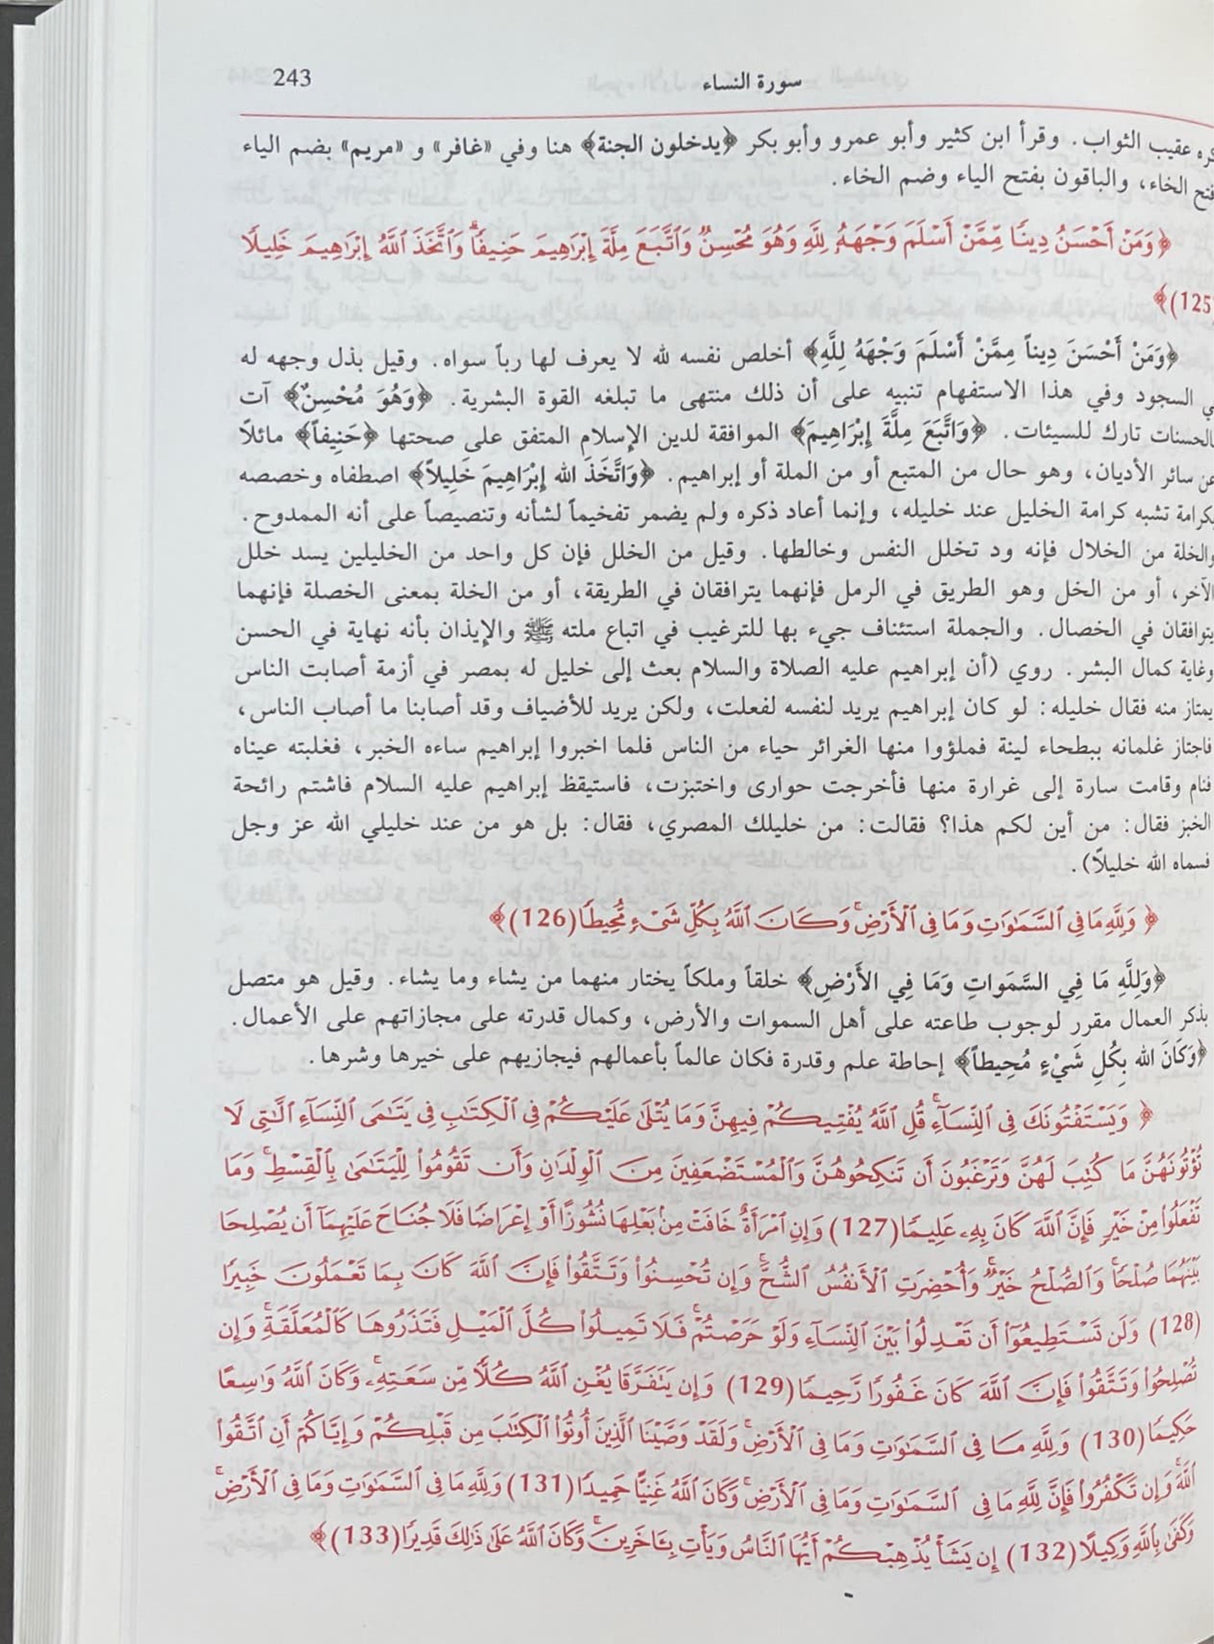 انوار التنزيل واسرار التاويل المعروف بتفسير البيضاوي Tafsir al Baydawi (2 Volume Set)